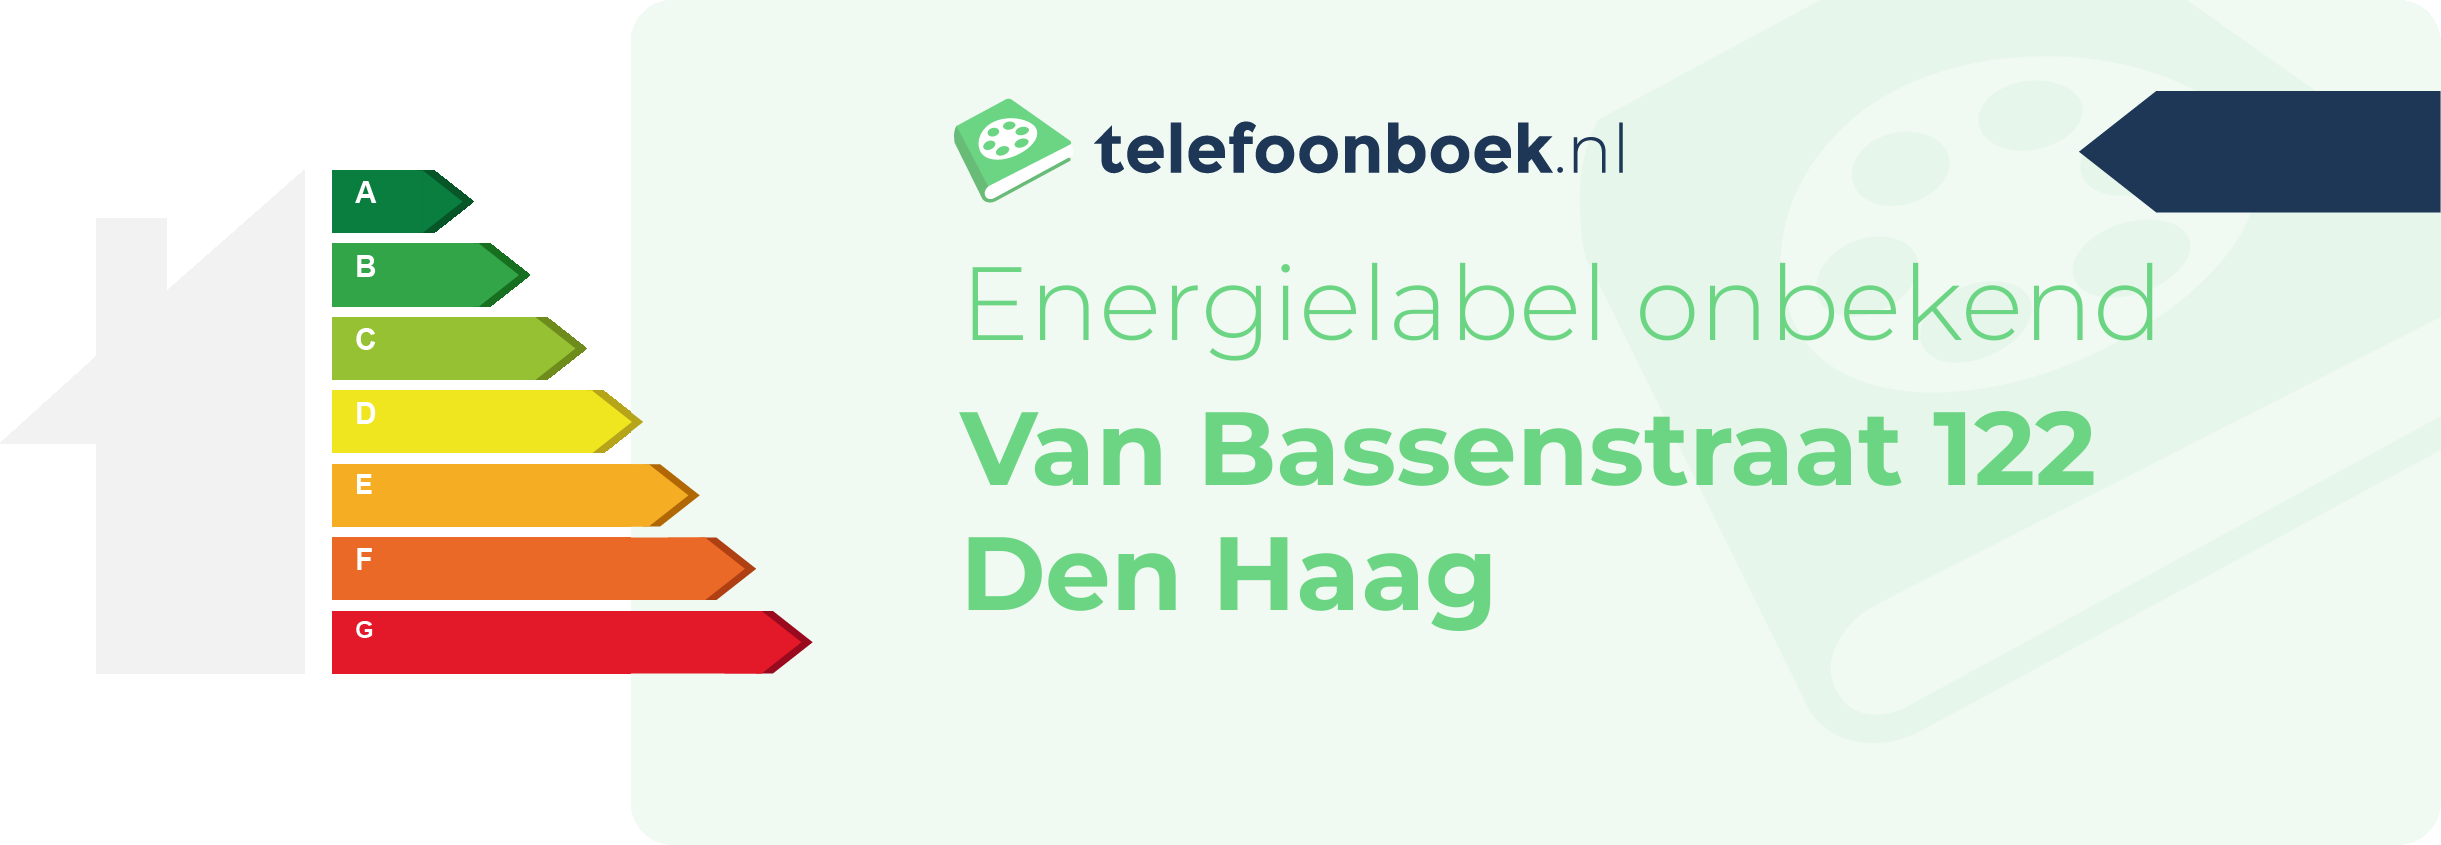 Energielabel Van Bassenstraat 122 Den Haag